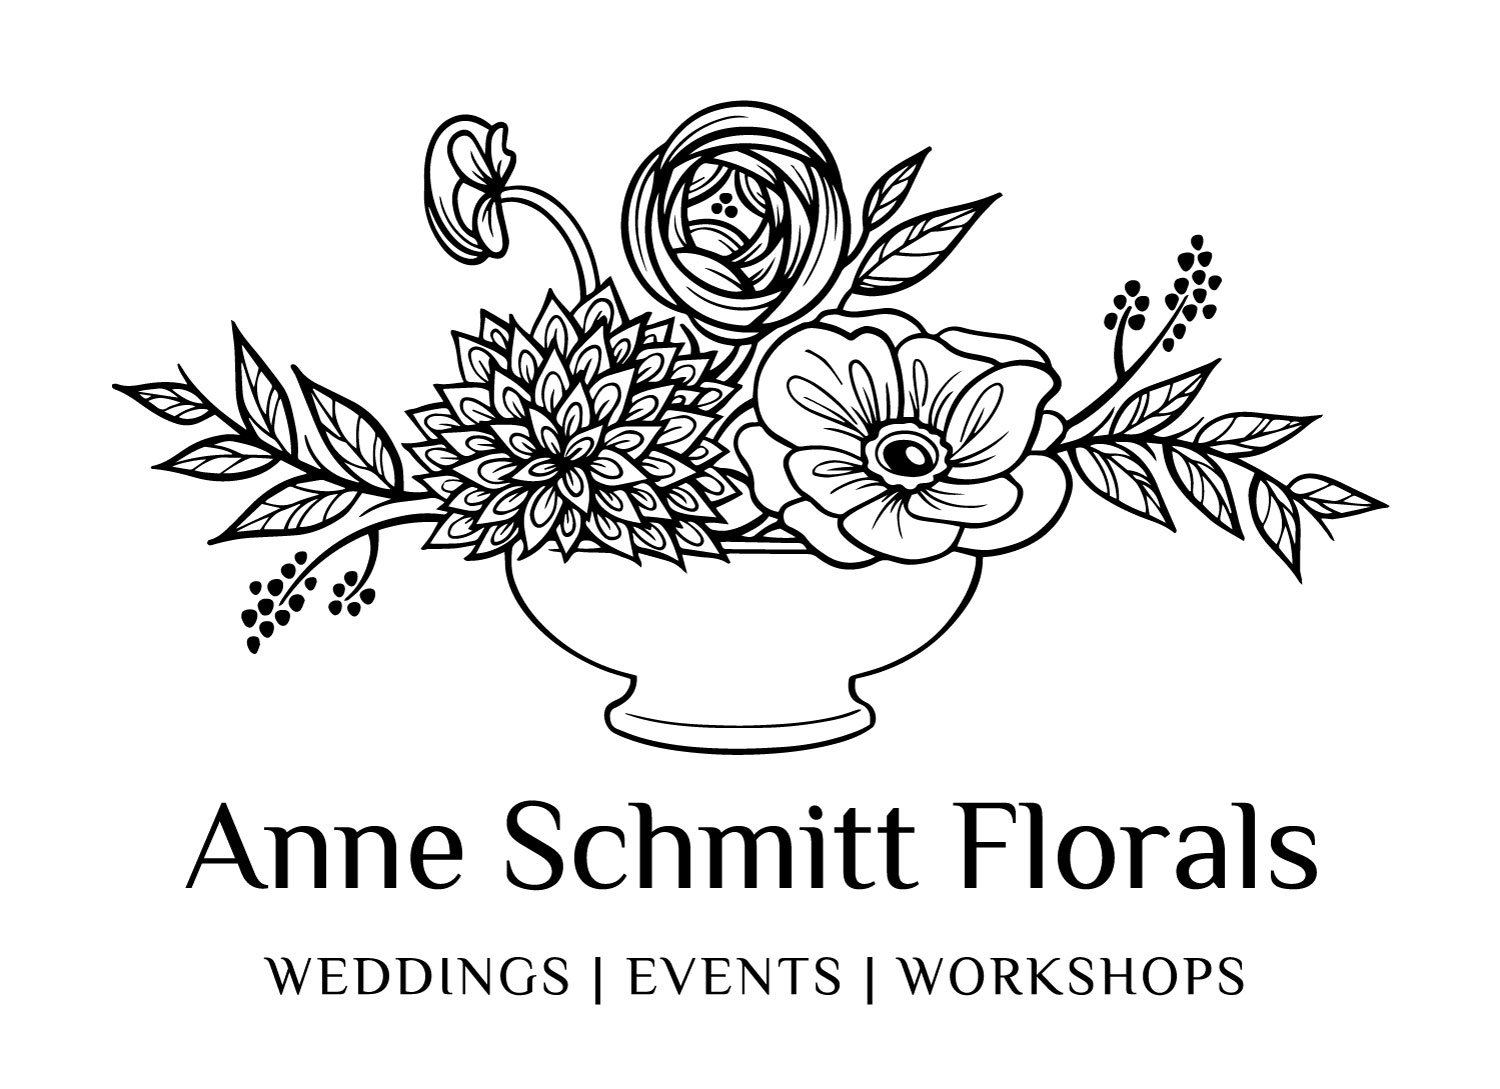 Anne Schmitt Florals